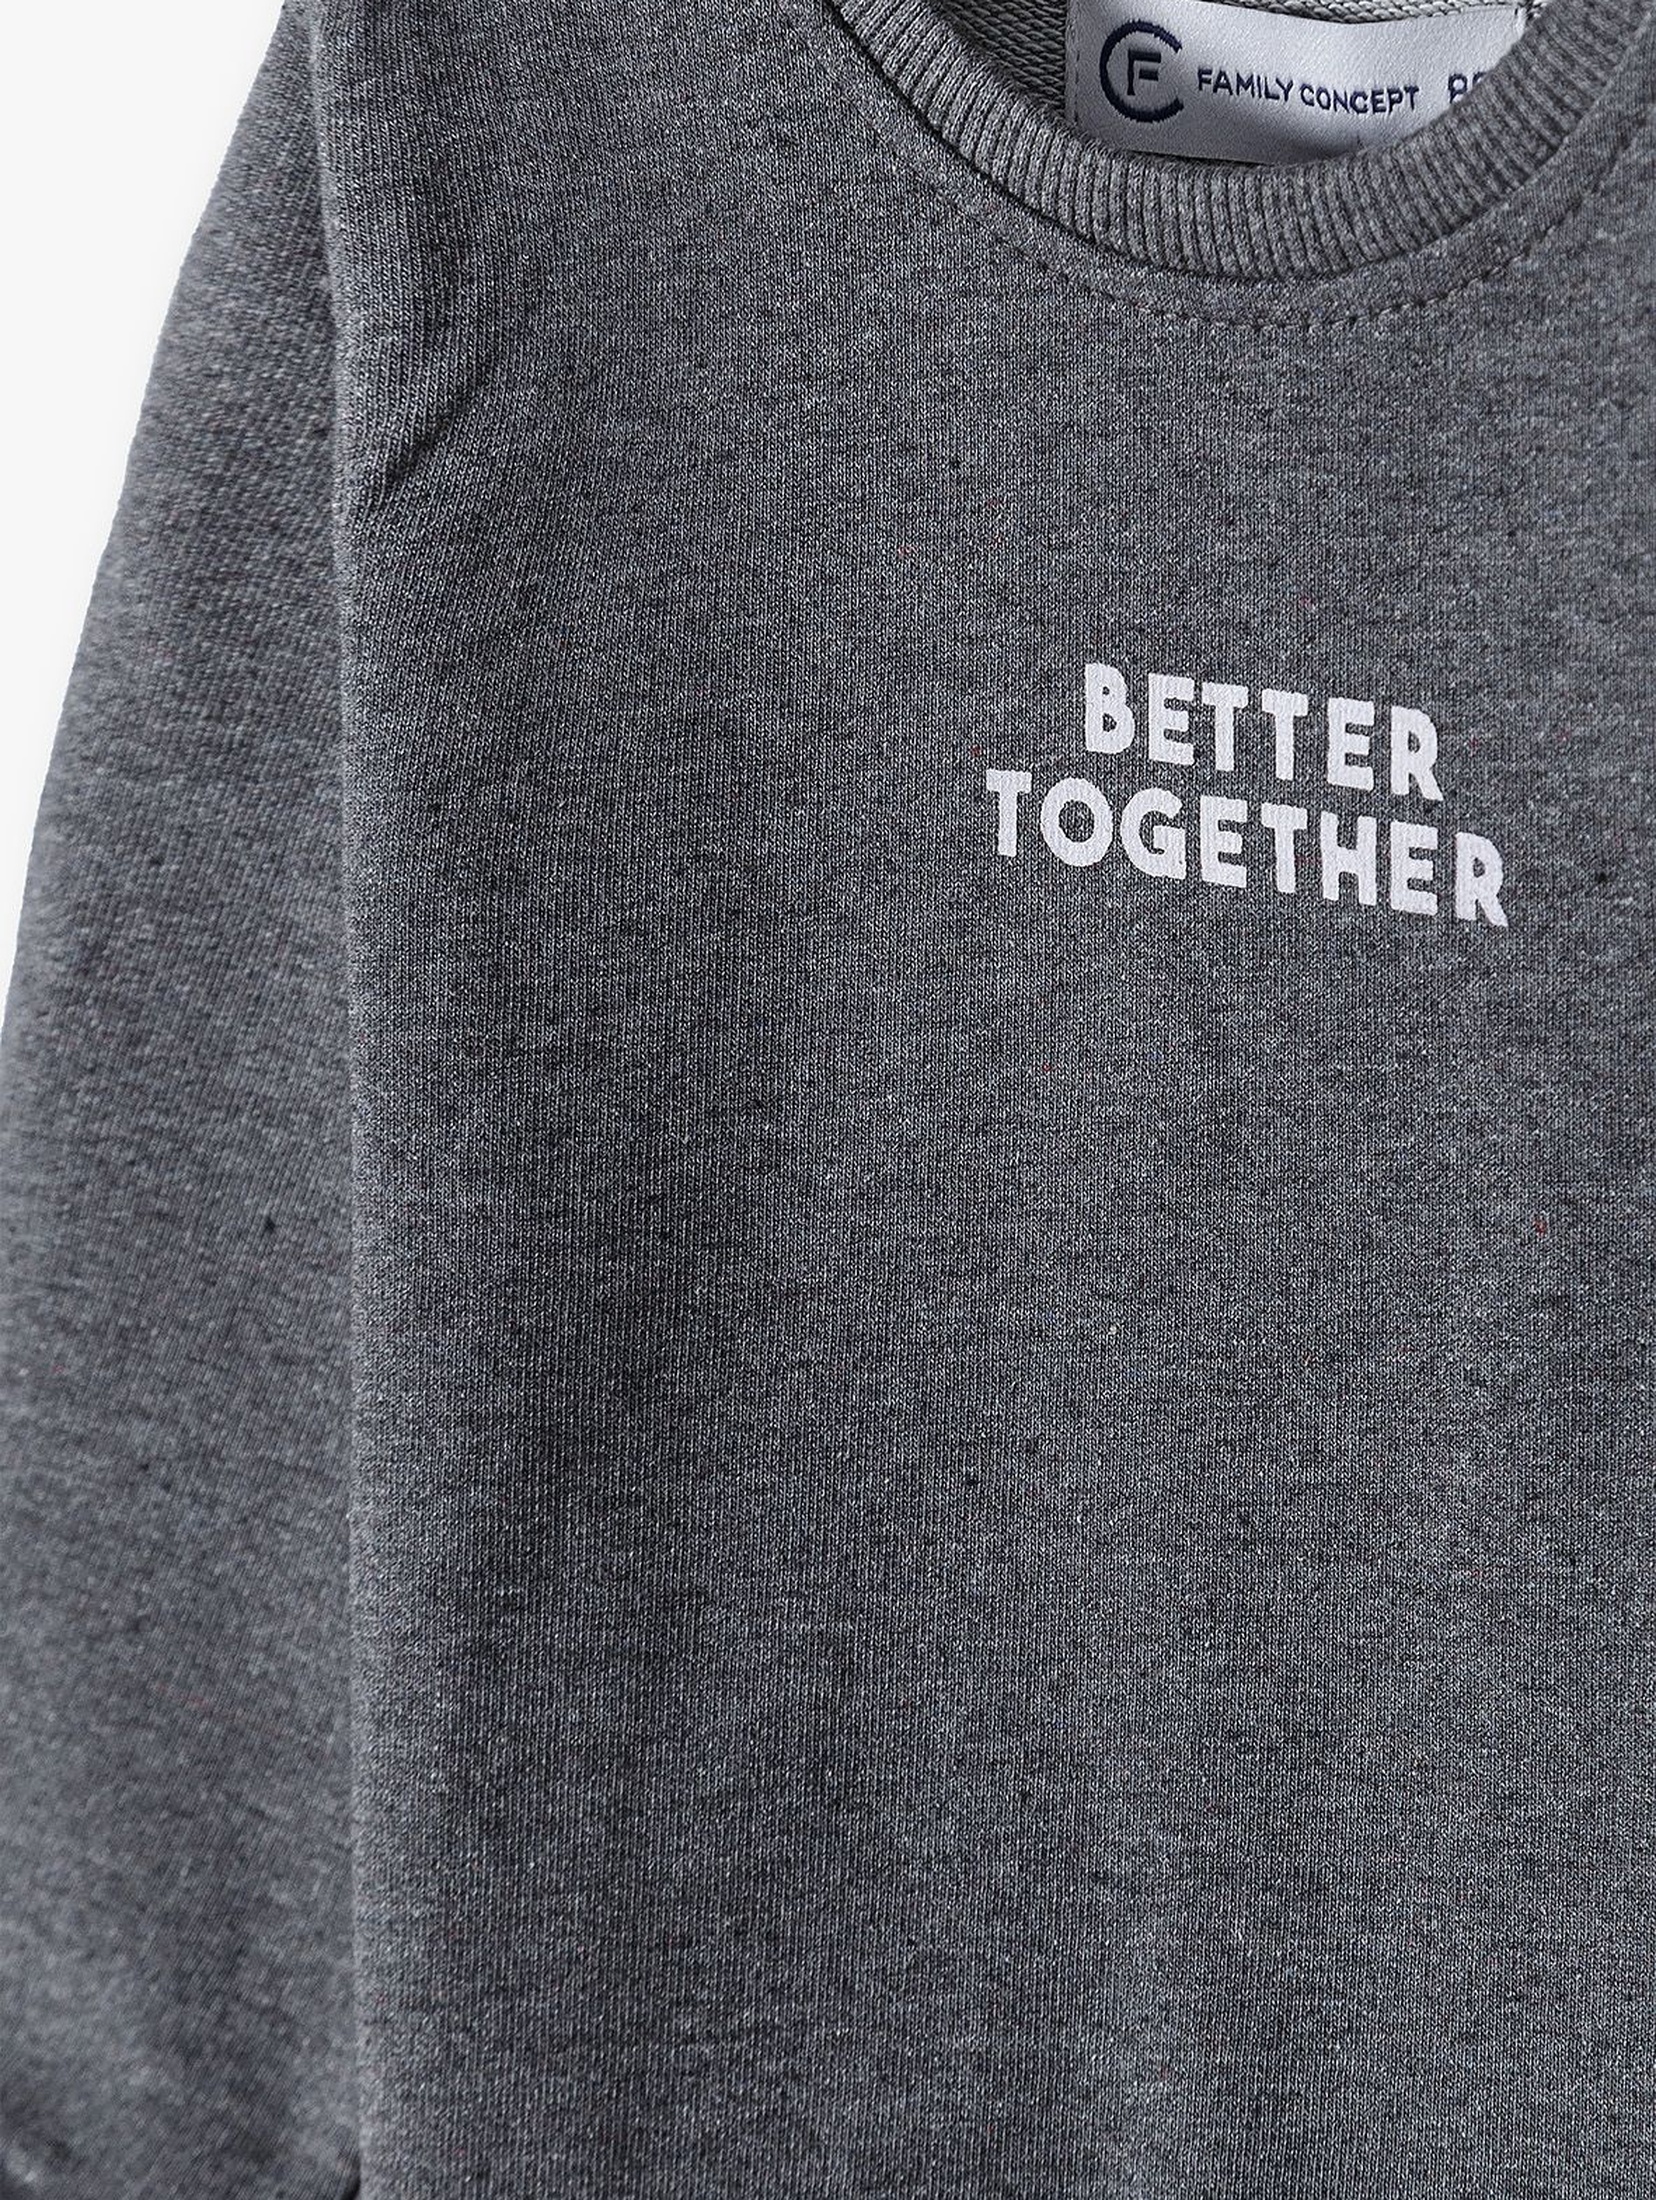 Bluza niemowlęca szara z napisem- Better Together - ubrania dla całej rodziny